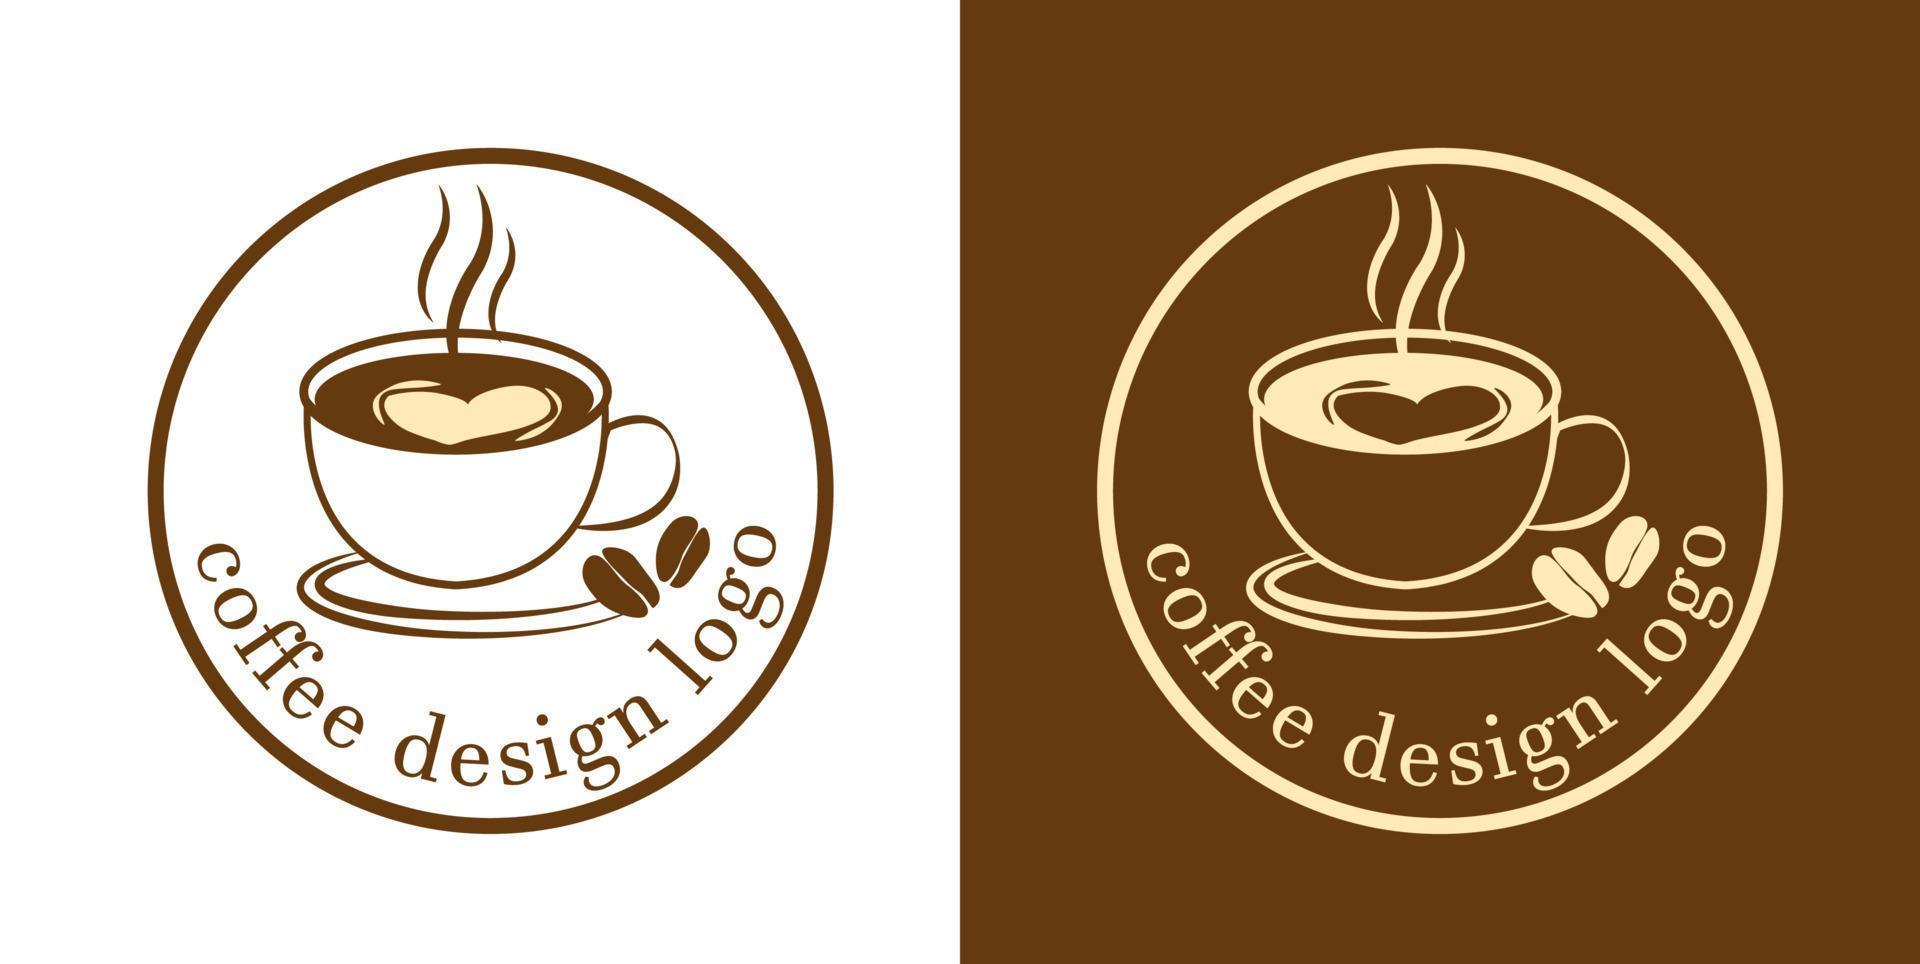 kaffeetassenikonen stellten illustrationsvektoren ein vektor